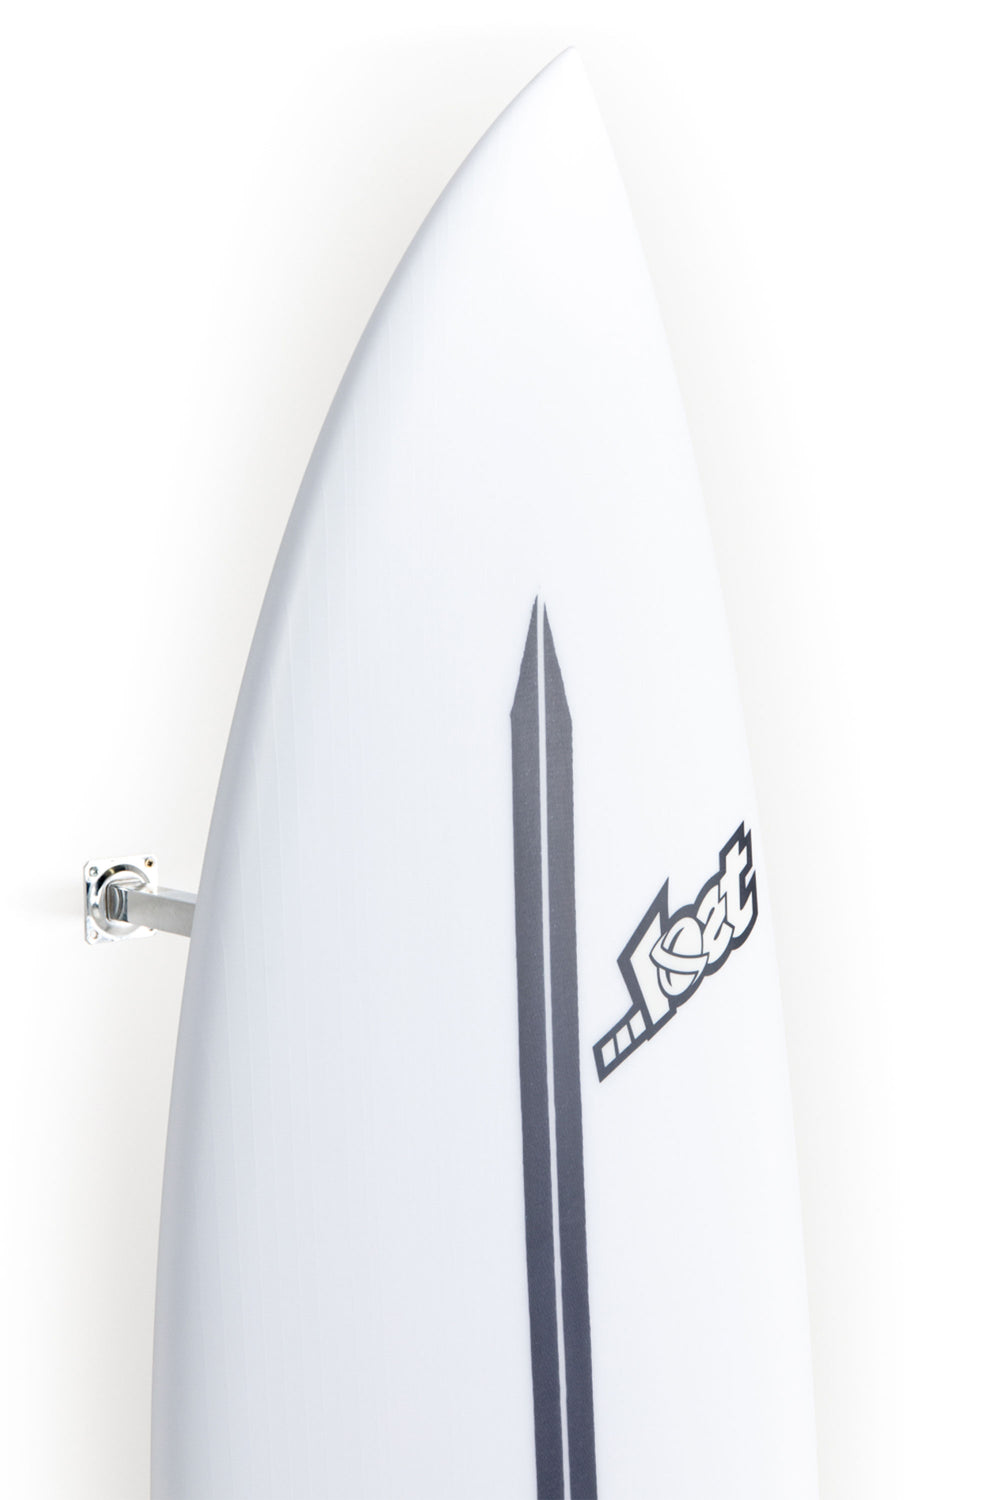 Lost Surfboard - SUB DRIVER 2.0 by Matt Biolos - Light Speed - 5’10” x 19,5  x 2,44 - 30L - MH11010